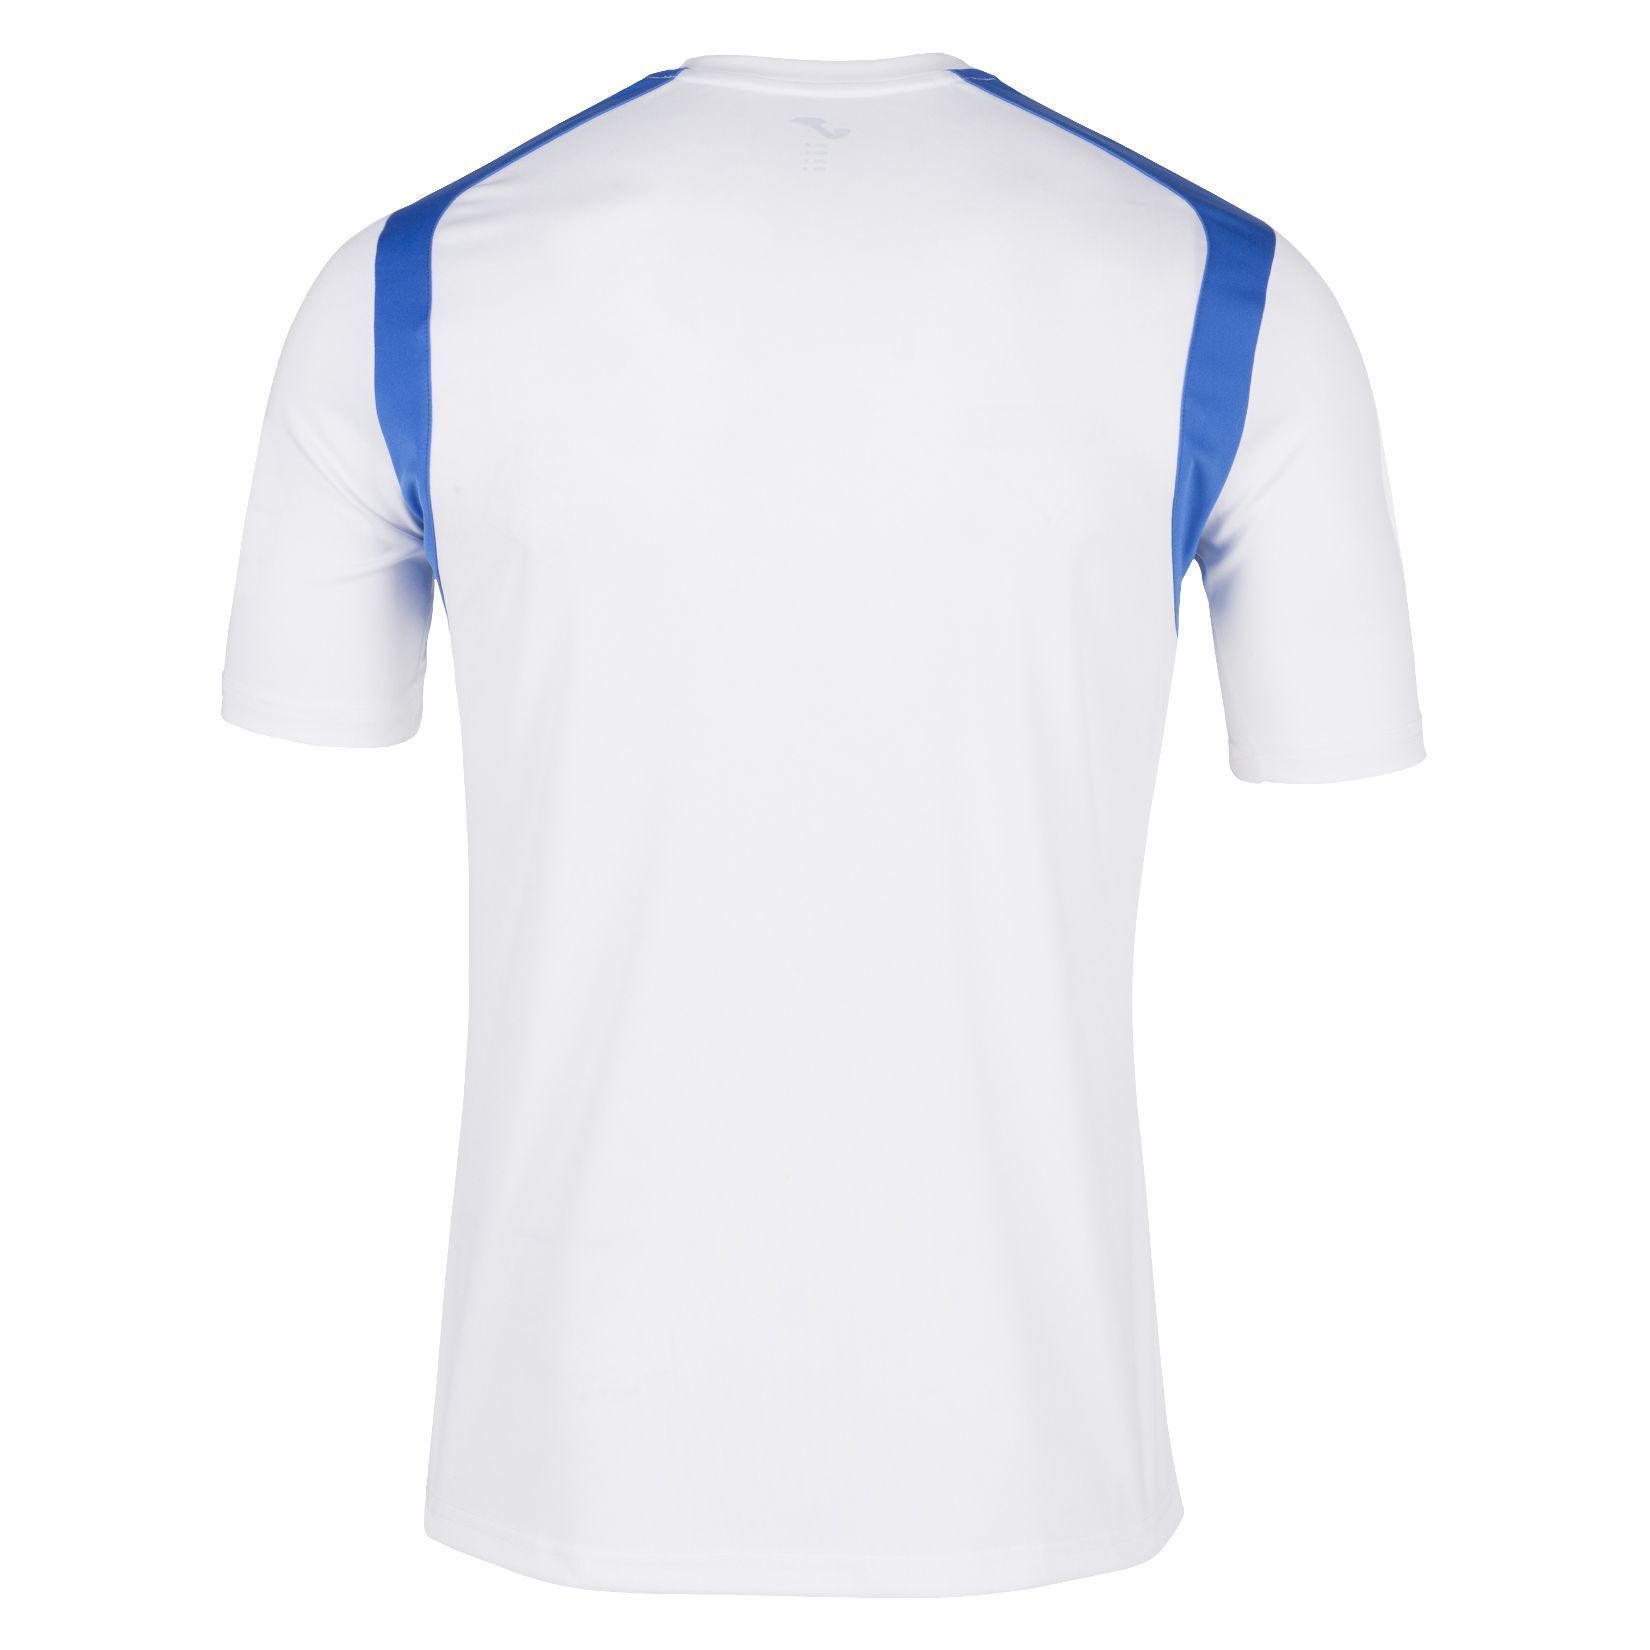 Joma Champion V Short Sleeve Shirt - Kitlocker.com